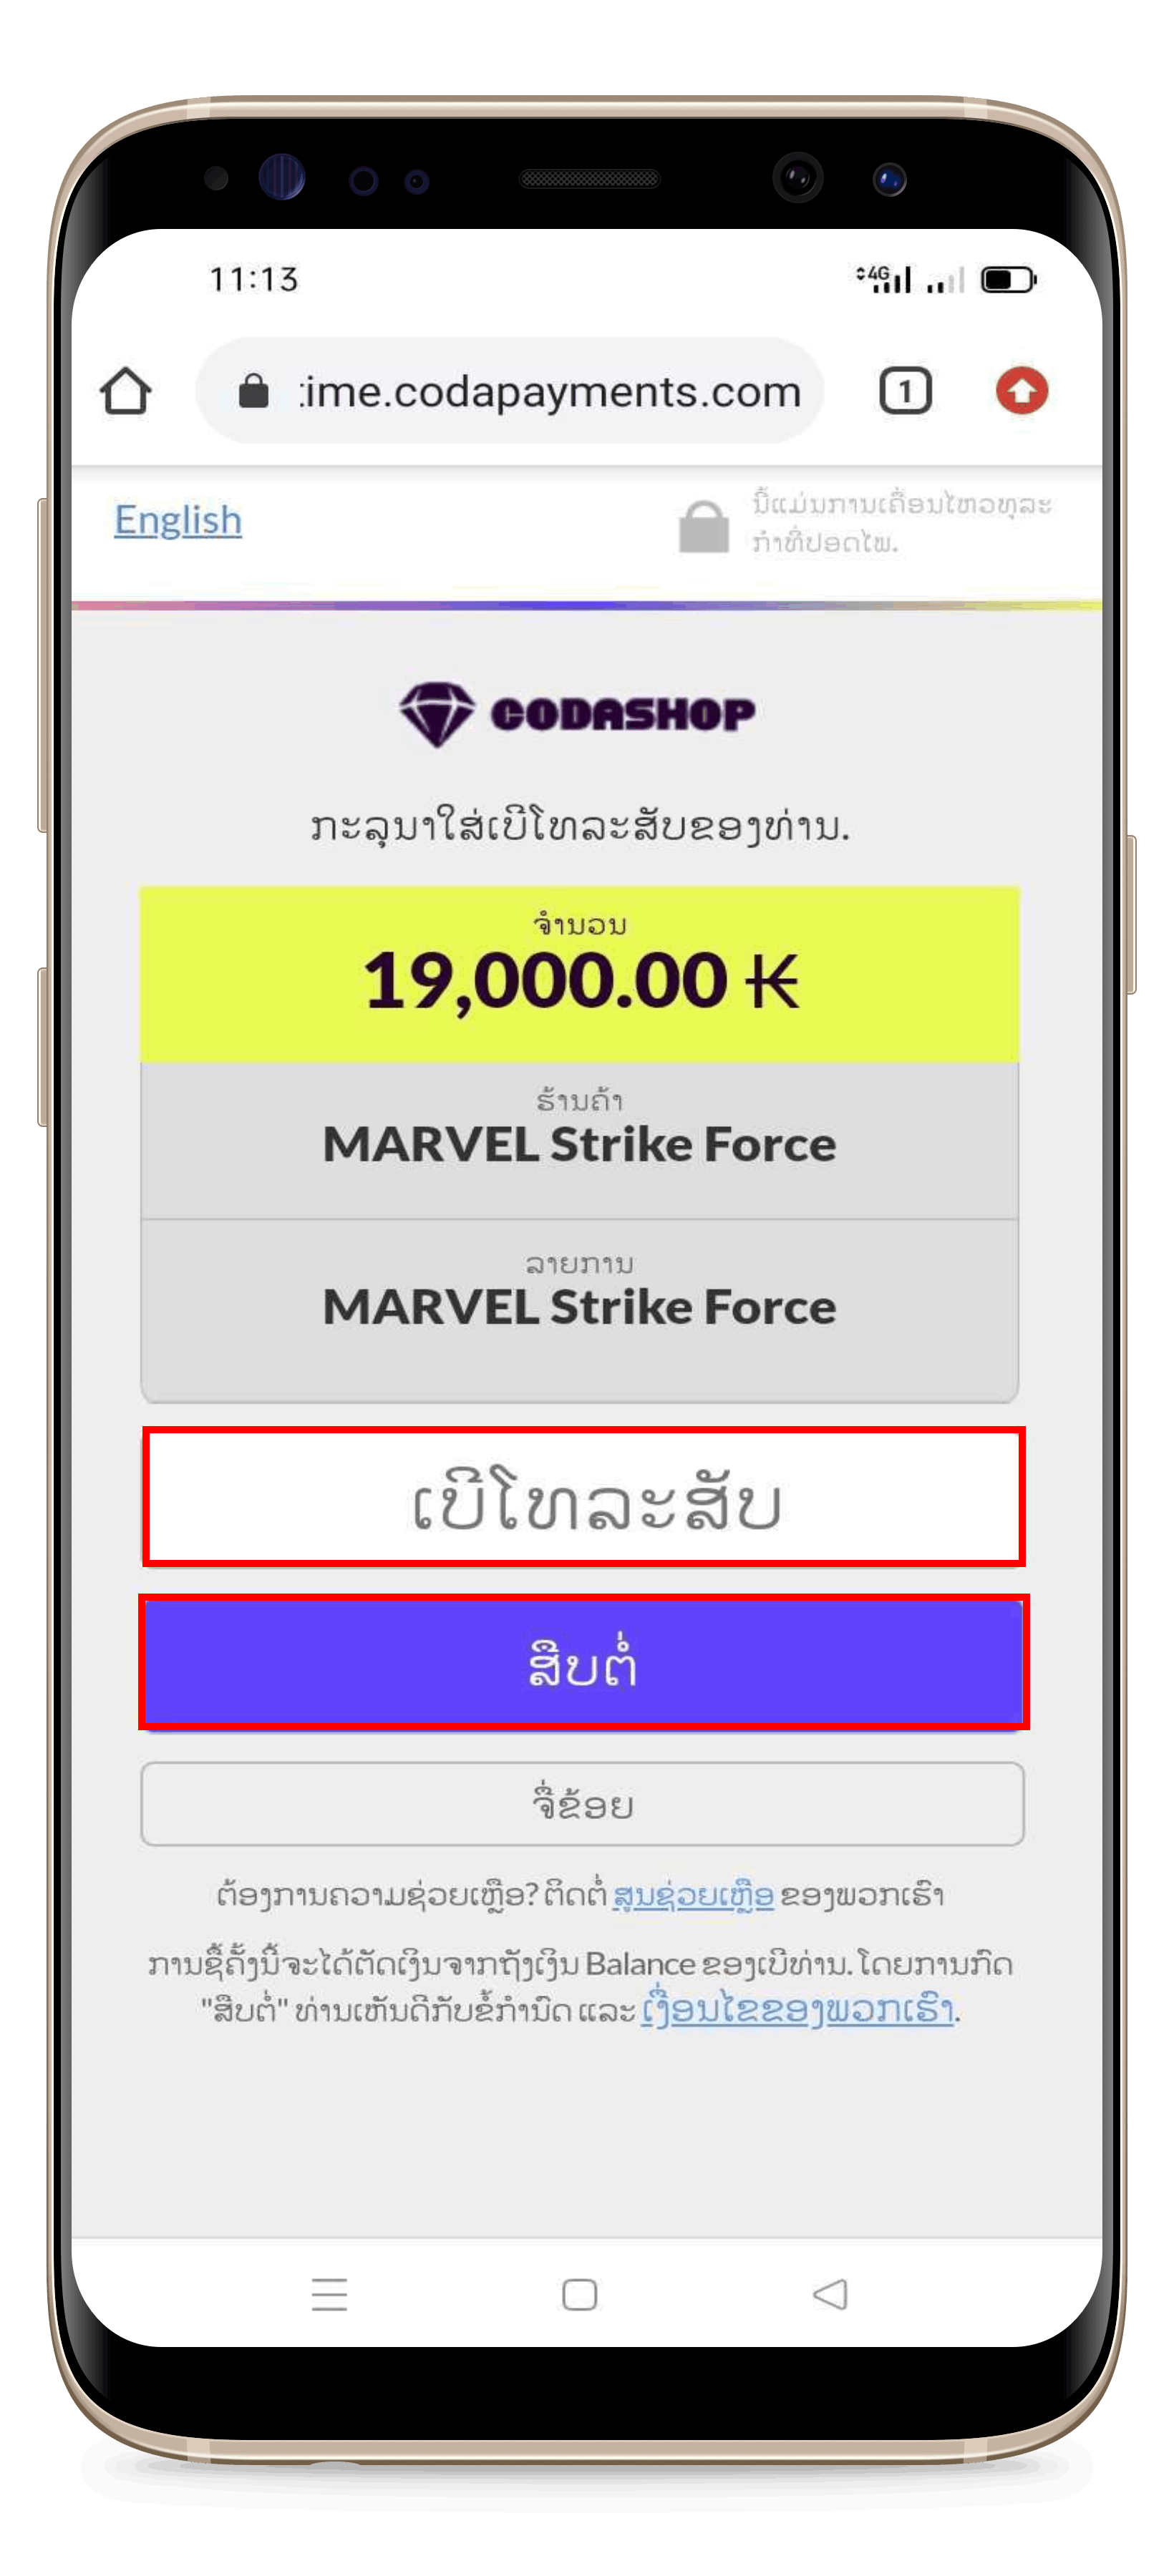 MARVEL_Strike_Force_4.png